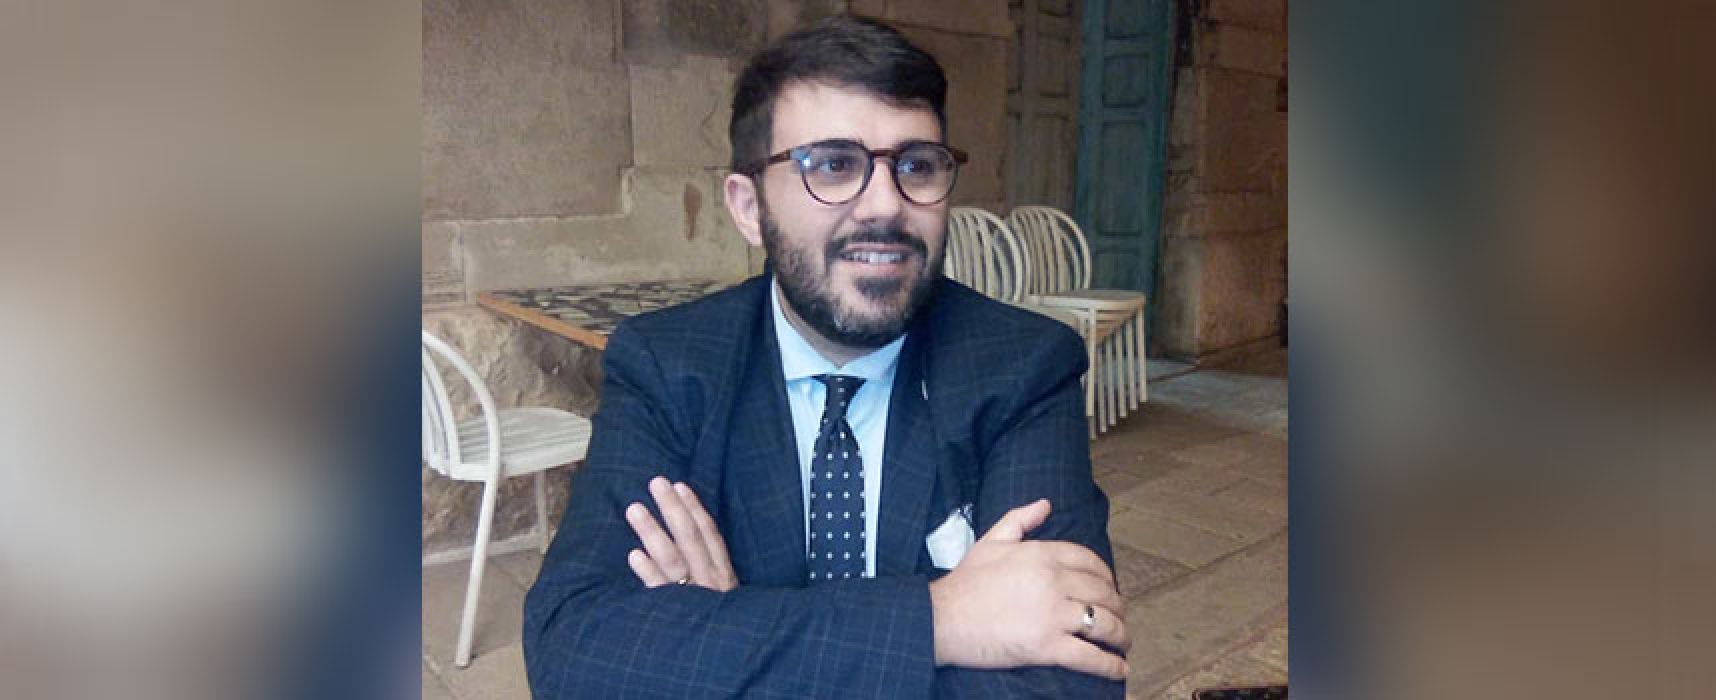 Francesco Mansueto coordinatore cittadino  di “Noi di centro”